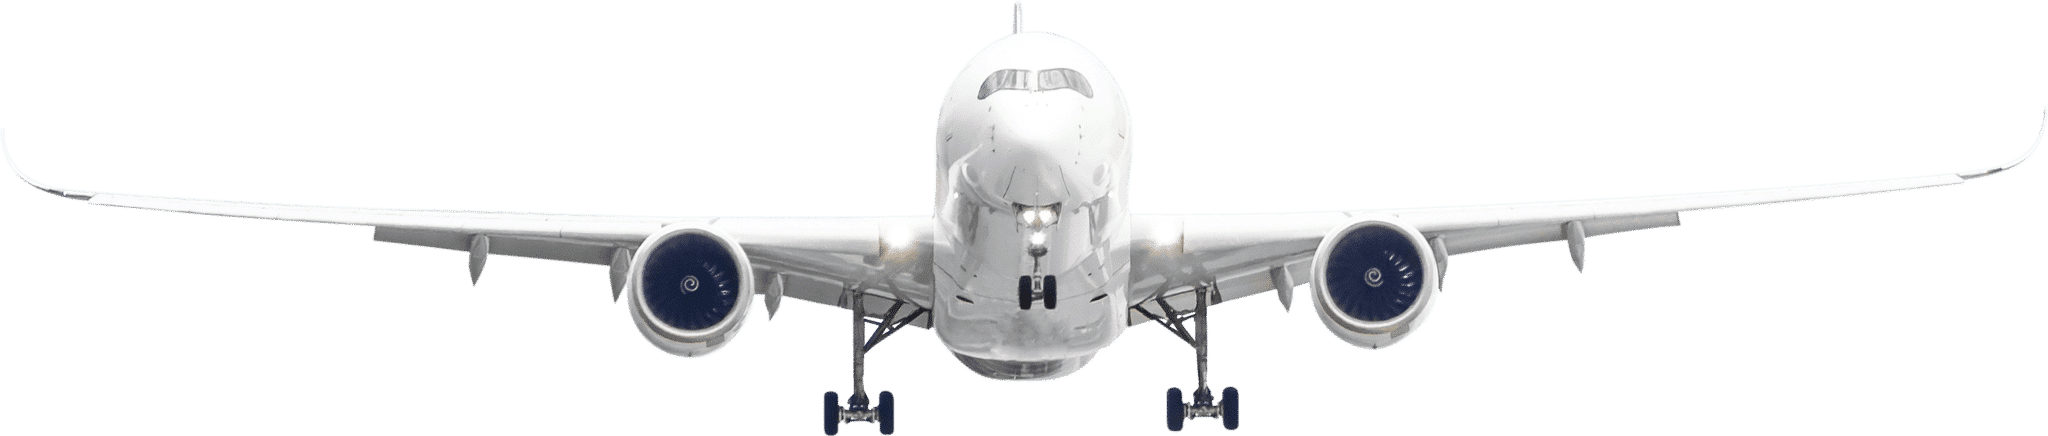 passenger-aircraft-airplane-min